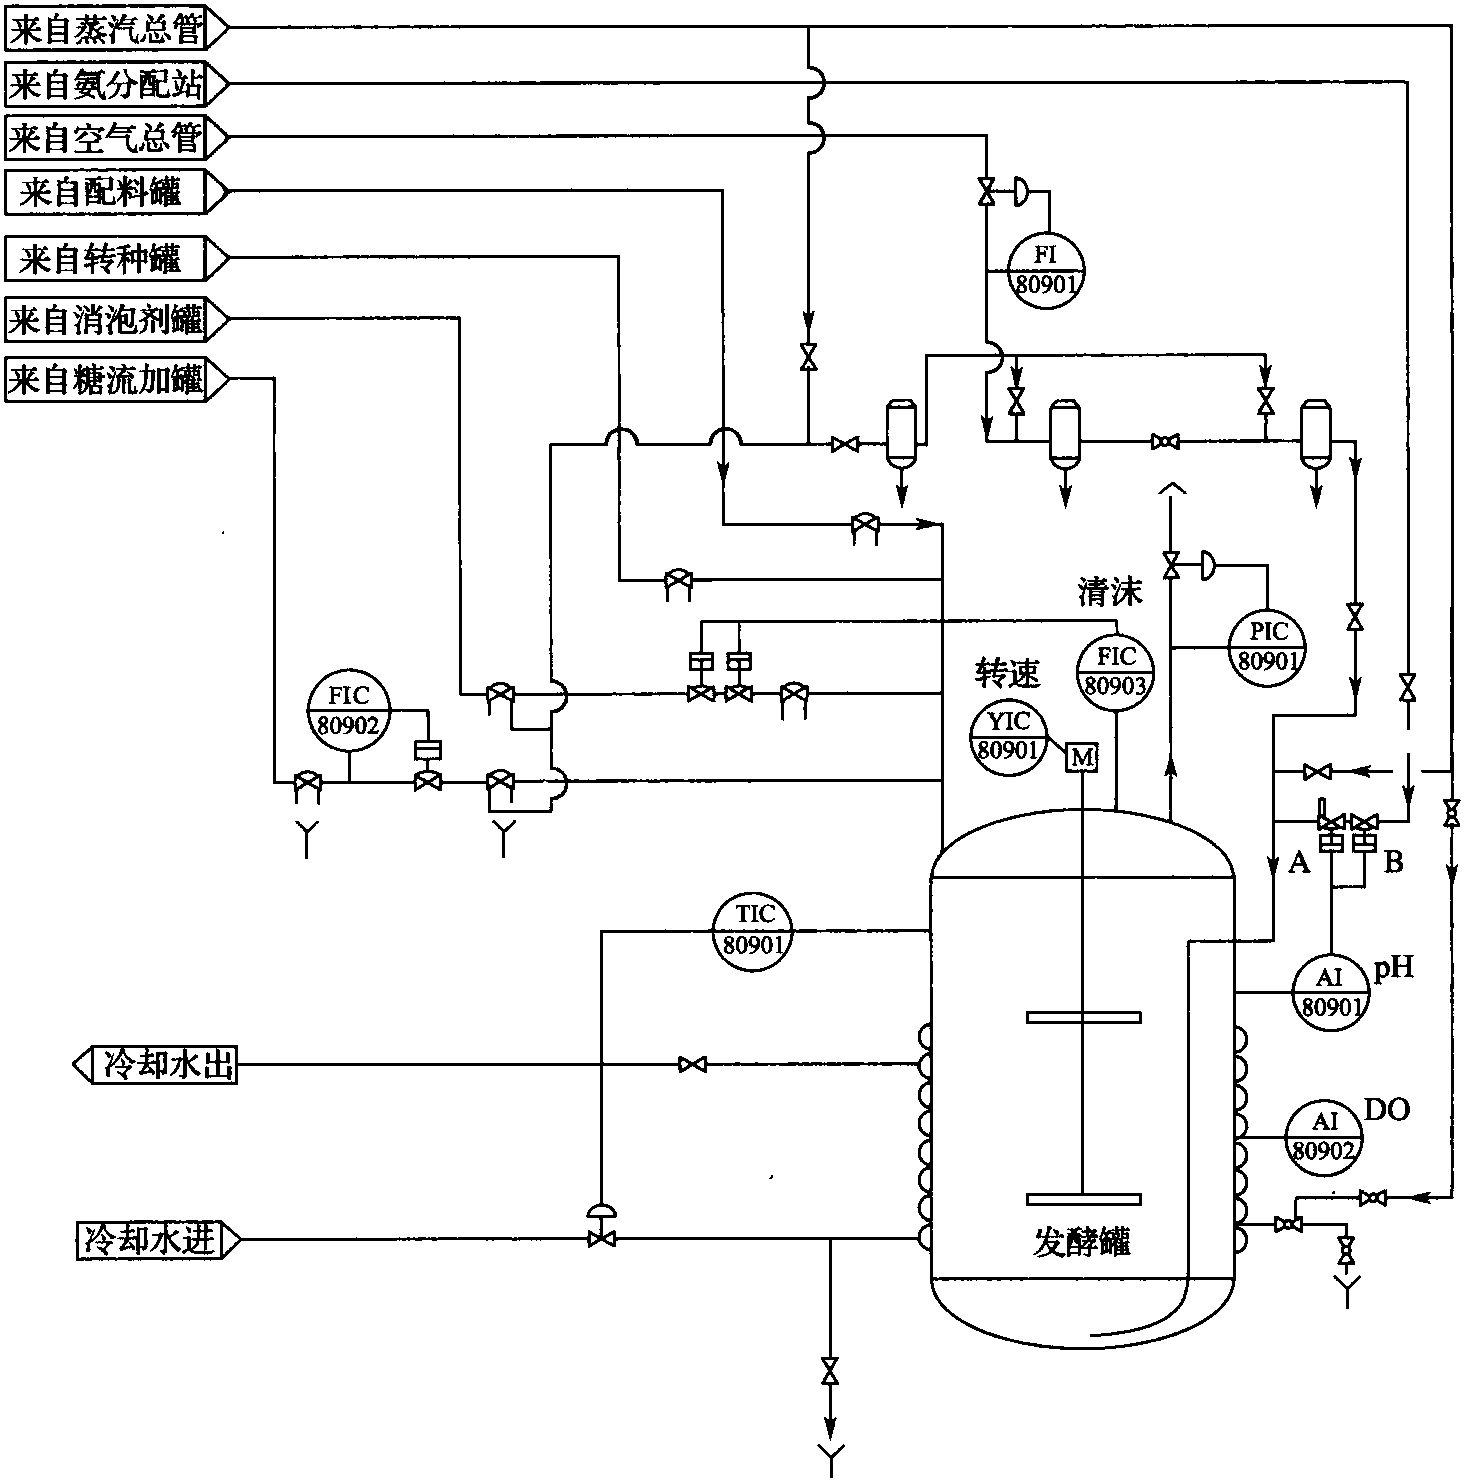 二、发酵罐控制点流程